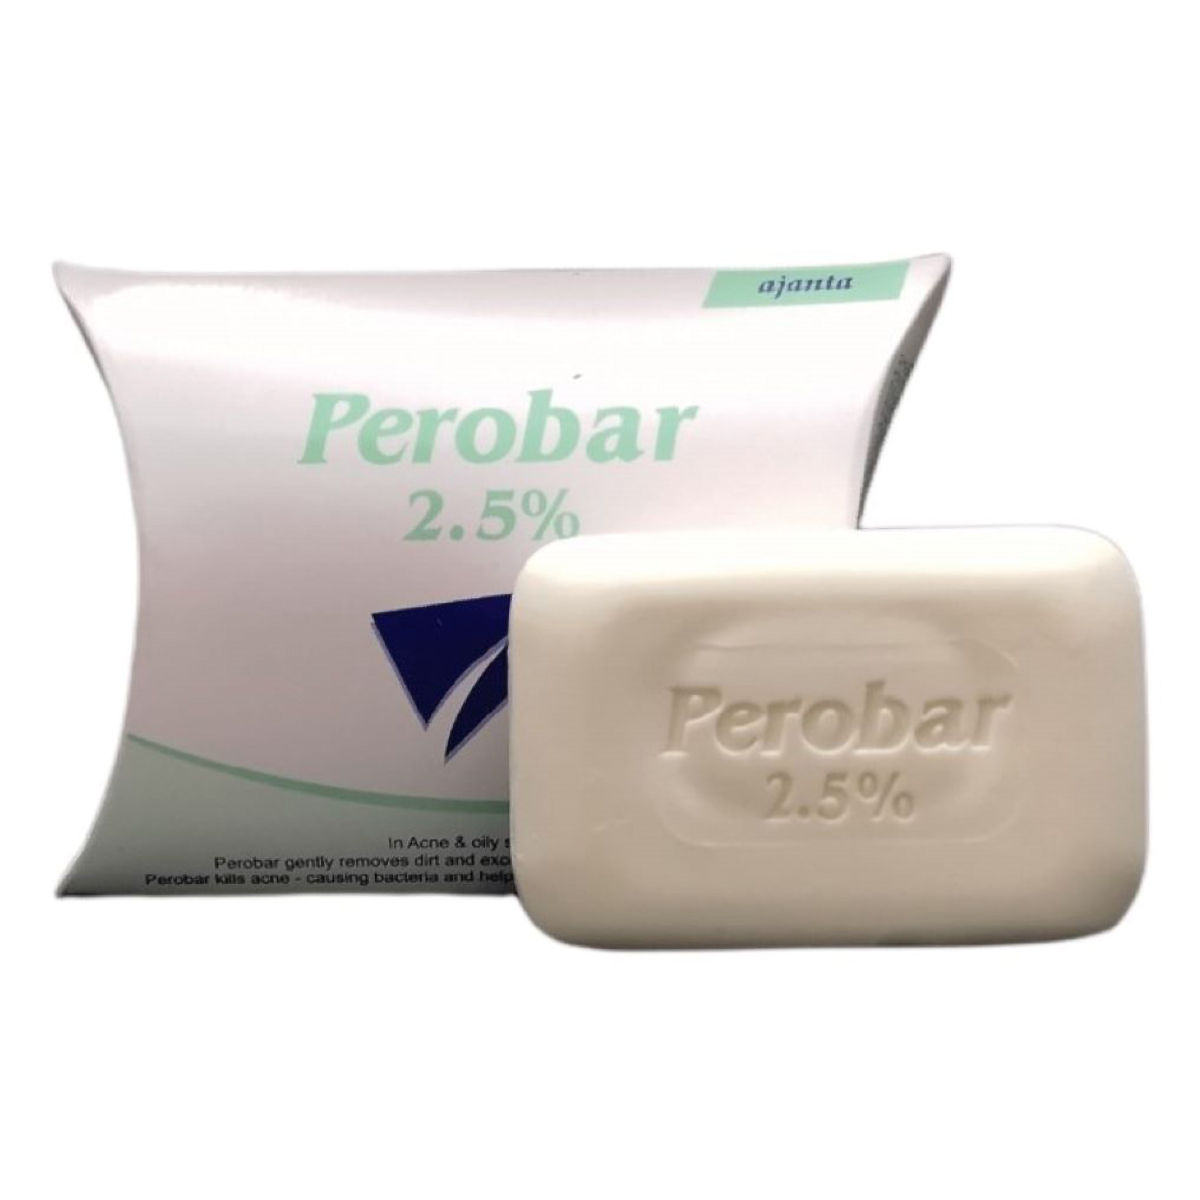 Buy Perobar 2.5% Soap, 75 gm Online